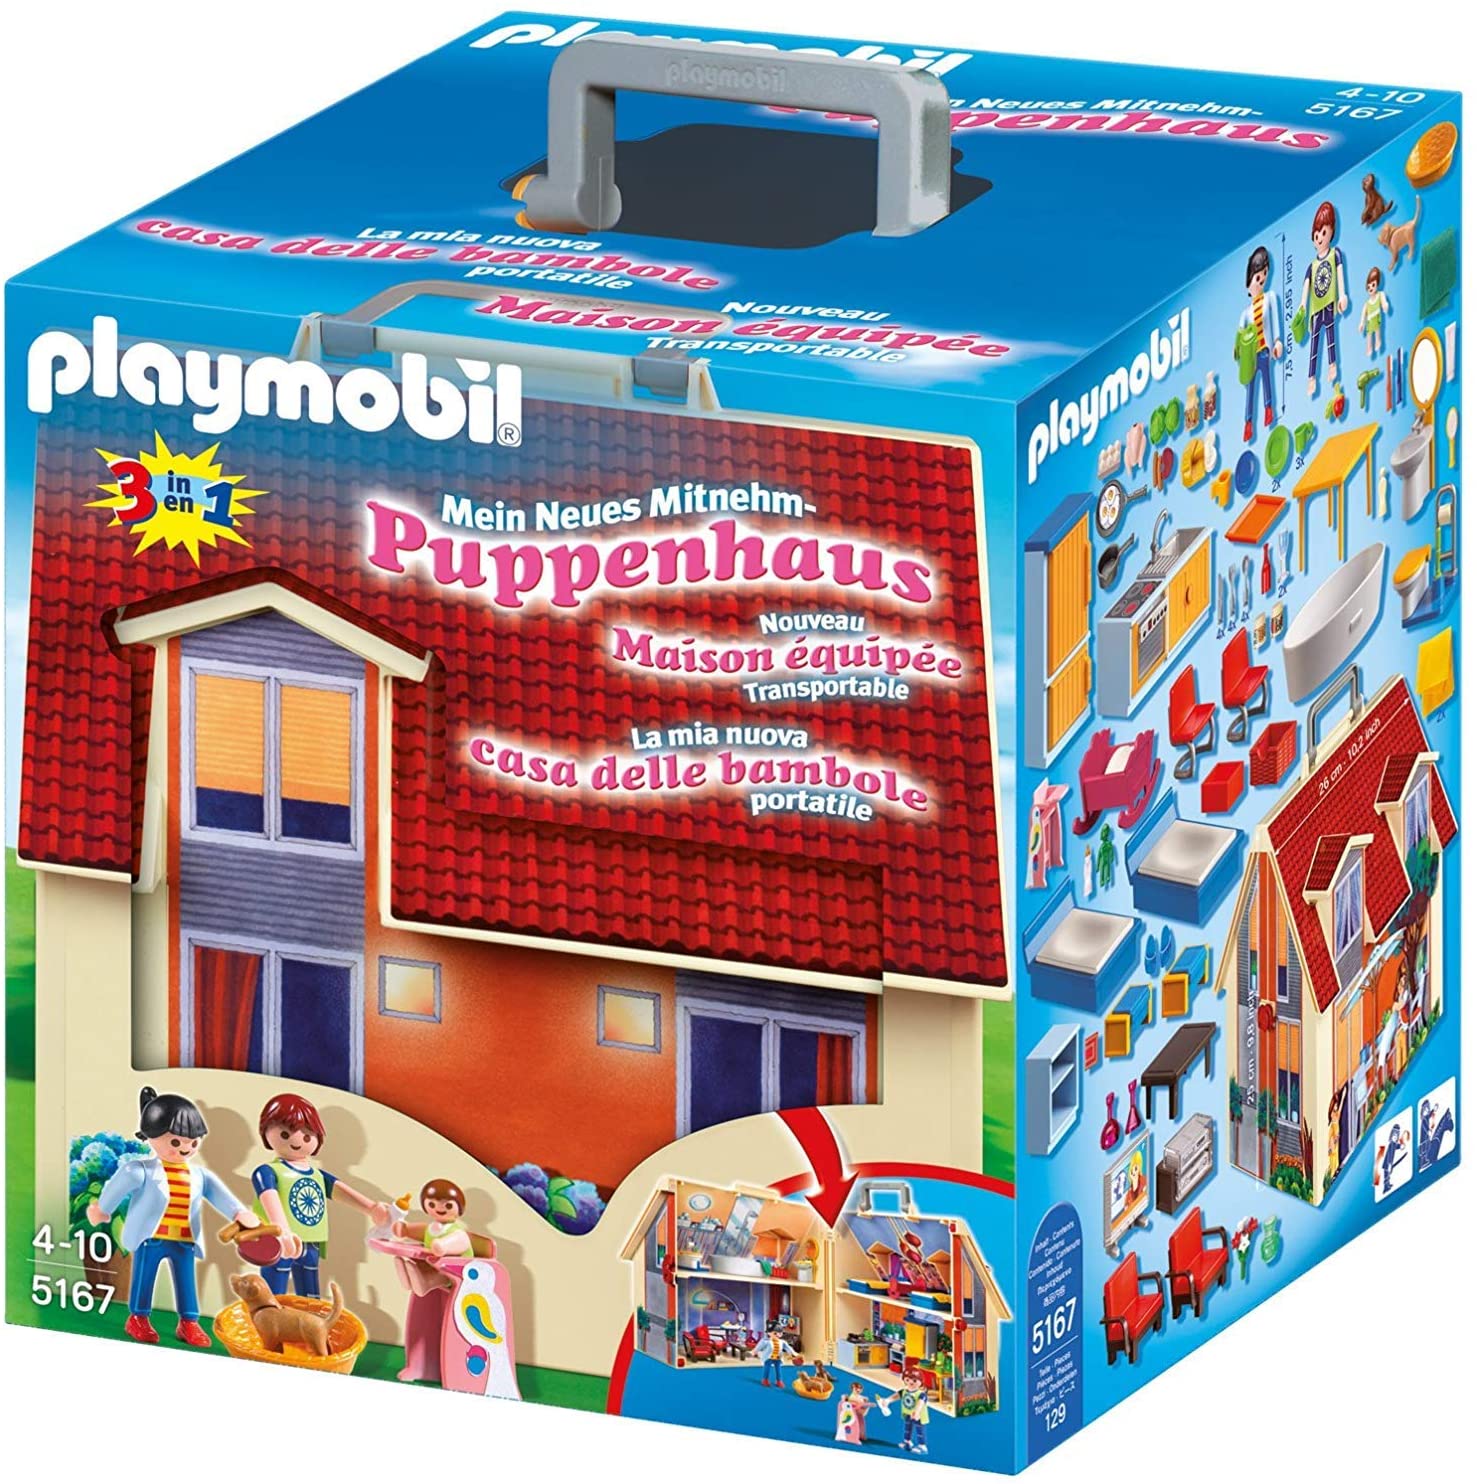 Maison playmobil : tout ce qu'il faut savoir sur ce type de jouet 